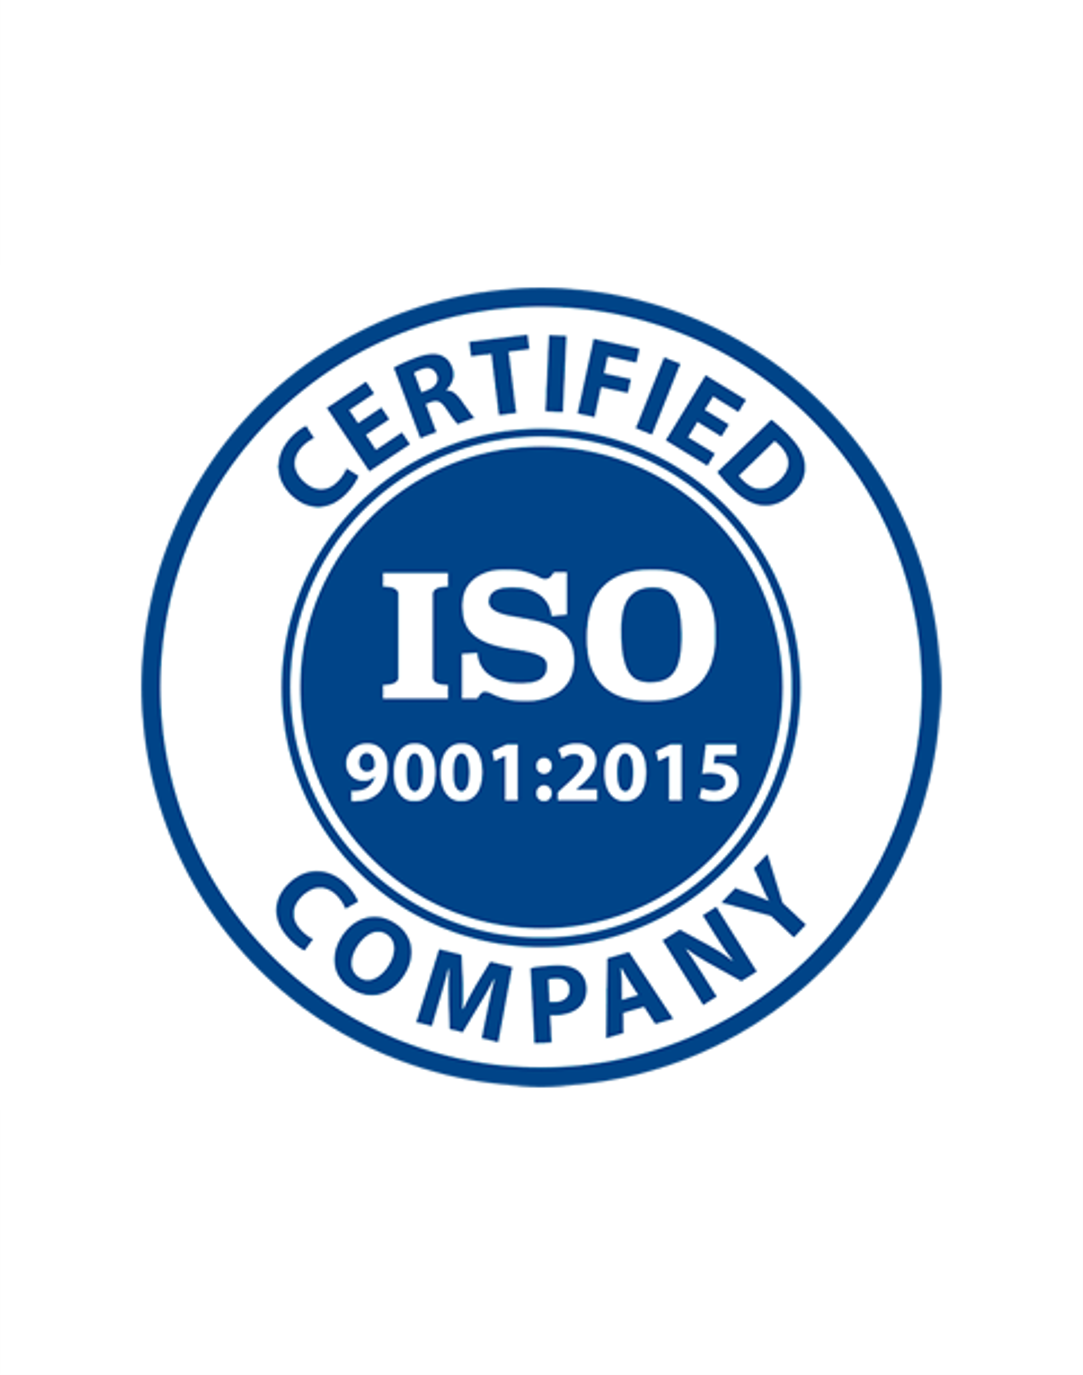 ISO 9001:2015 - Danbury, CT (SRR)